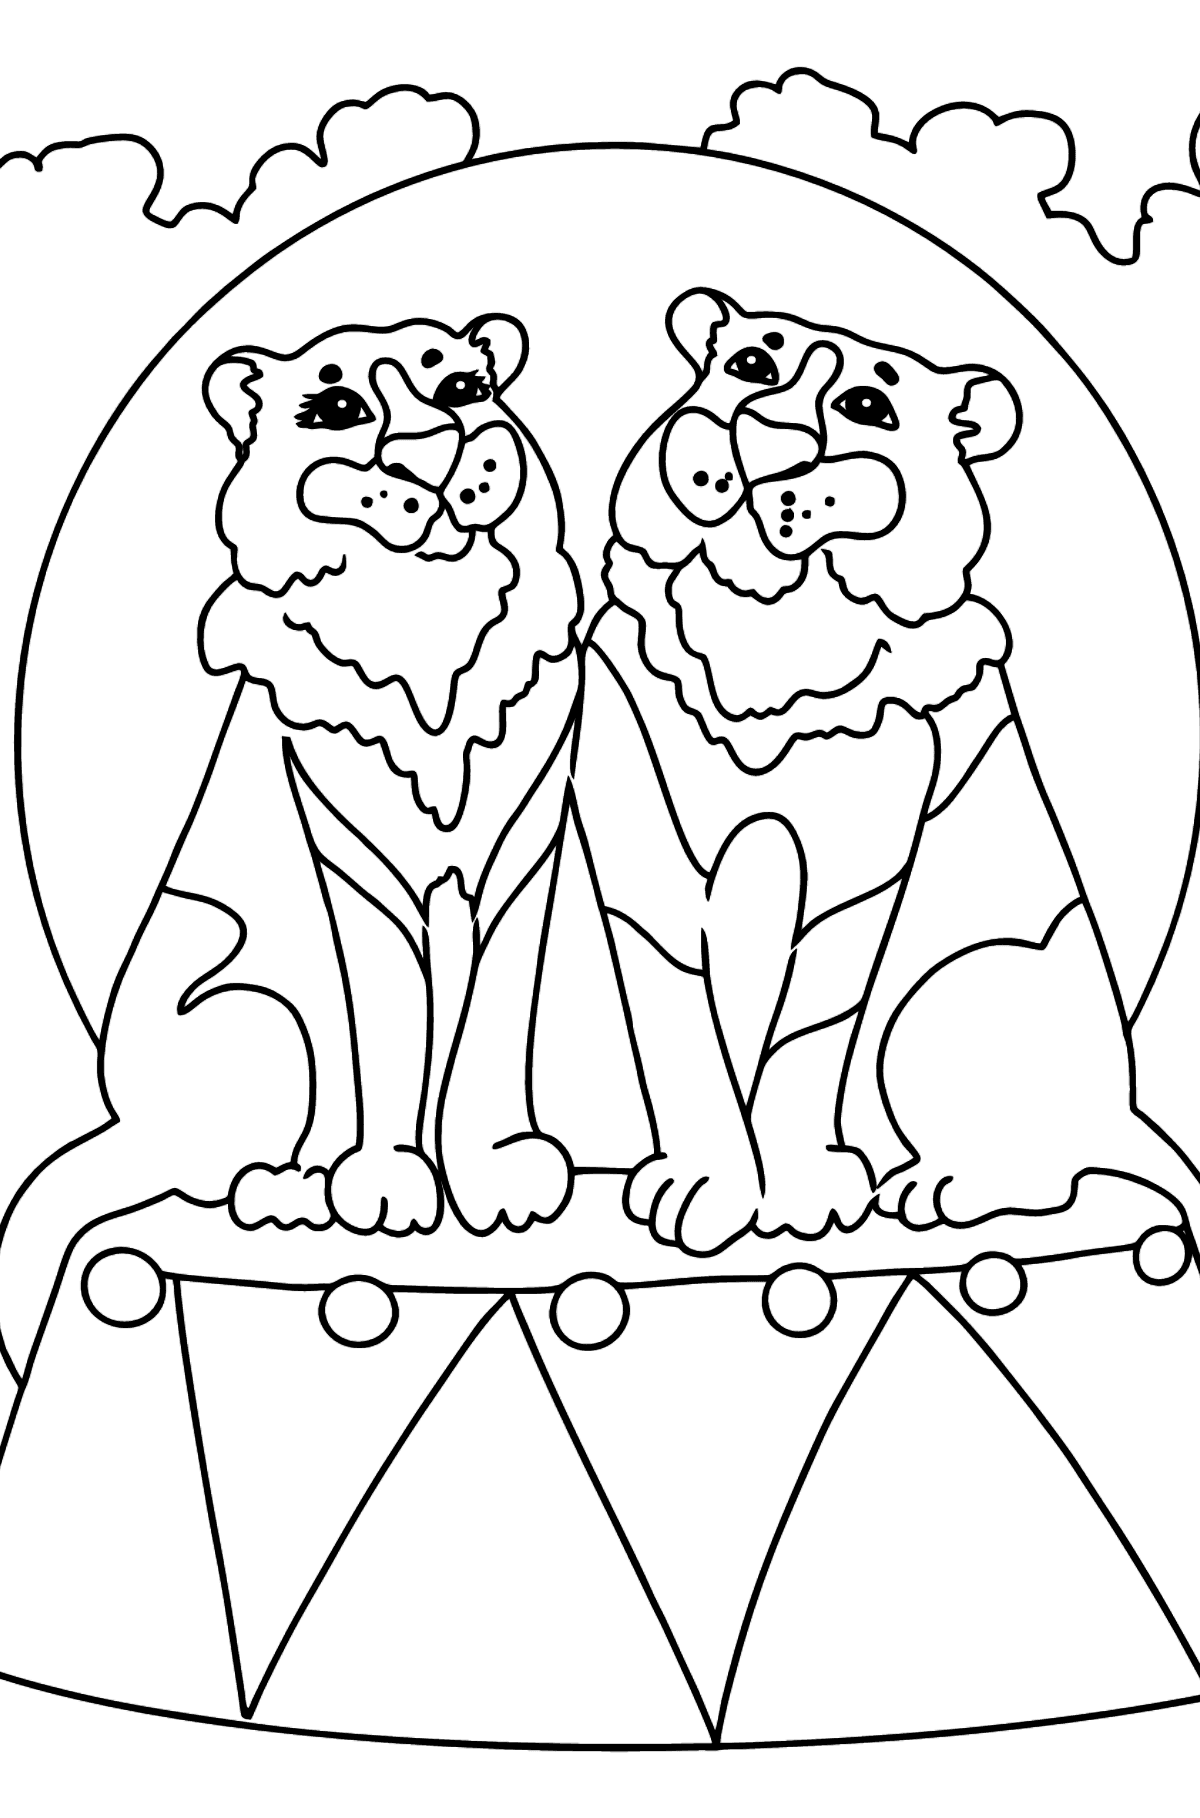 Раскраска Тигр в цирке - Картинки для Детей